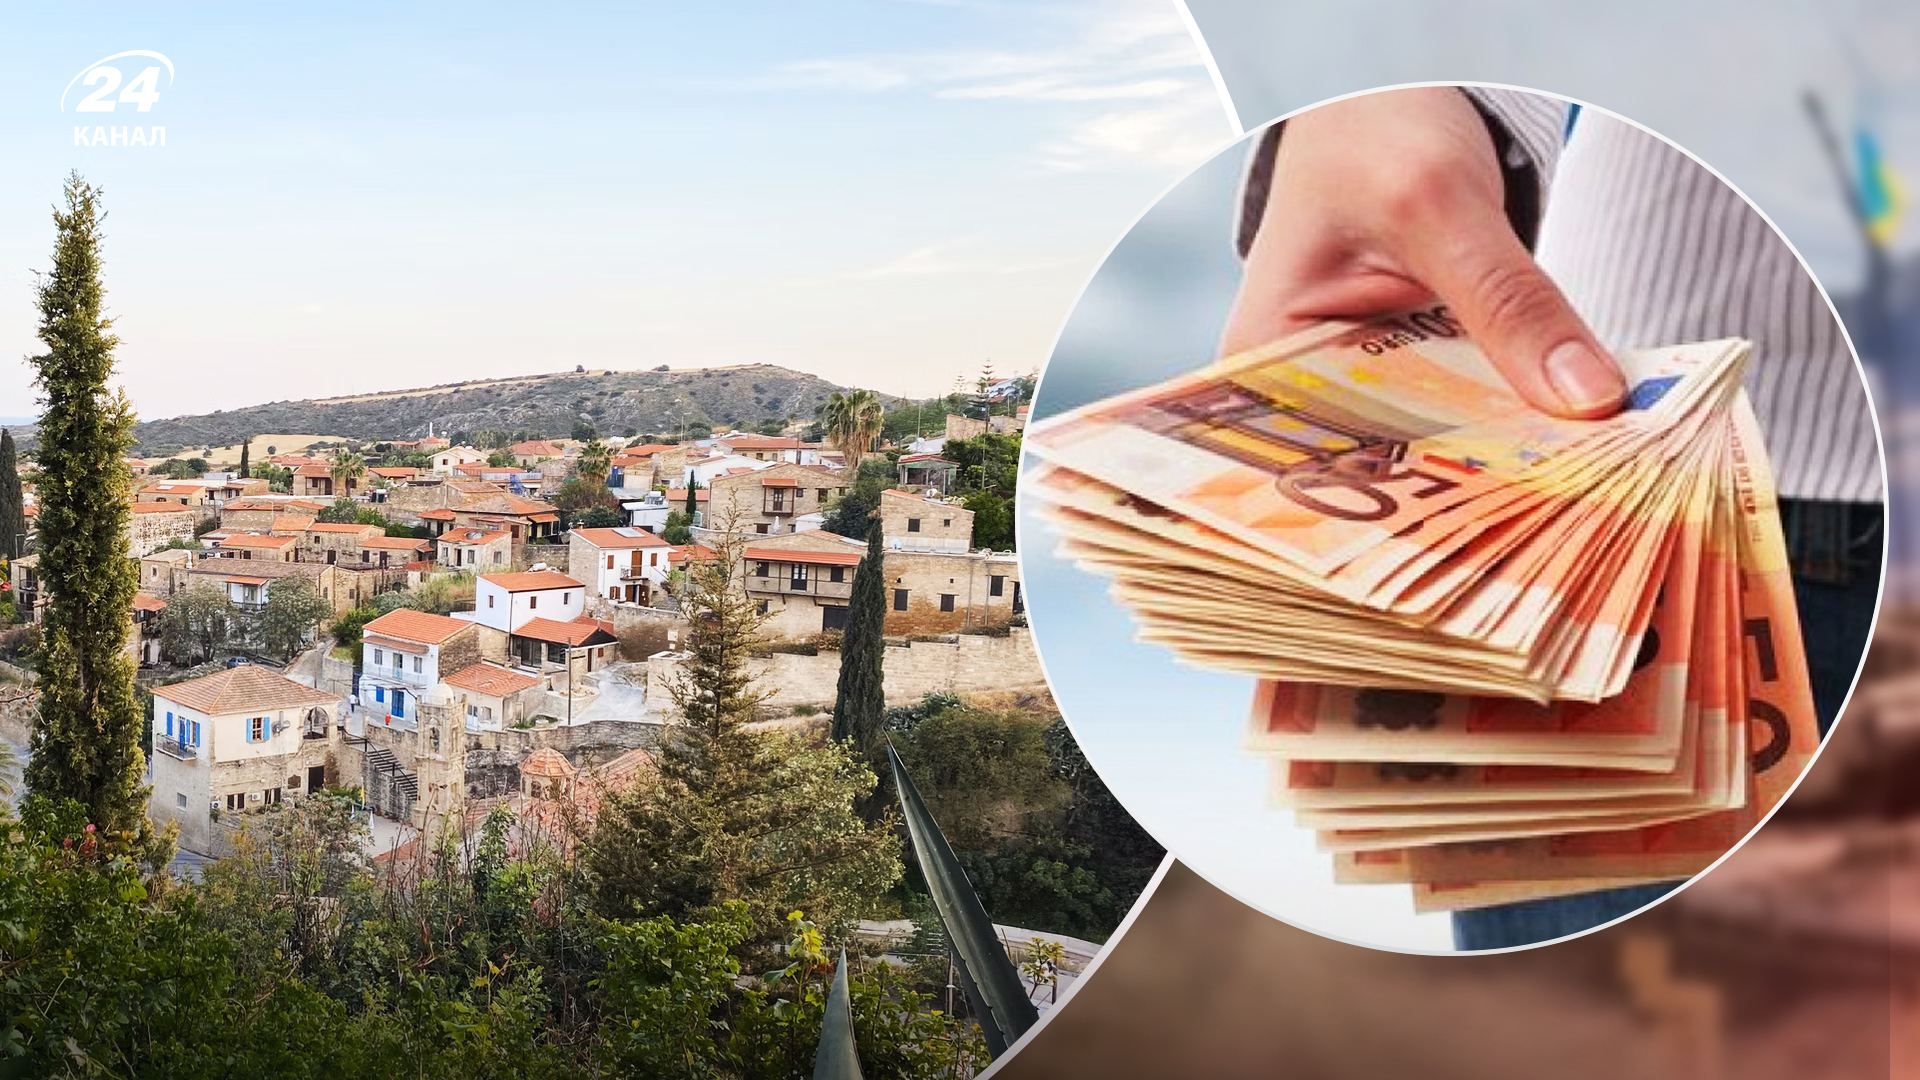 Иностранцы массово скупают недвижимость на Кипре  причины ажиотажа - Недвижимость